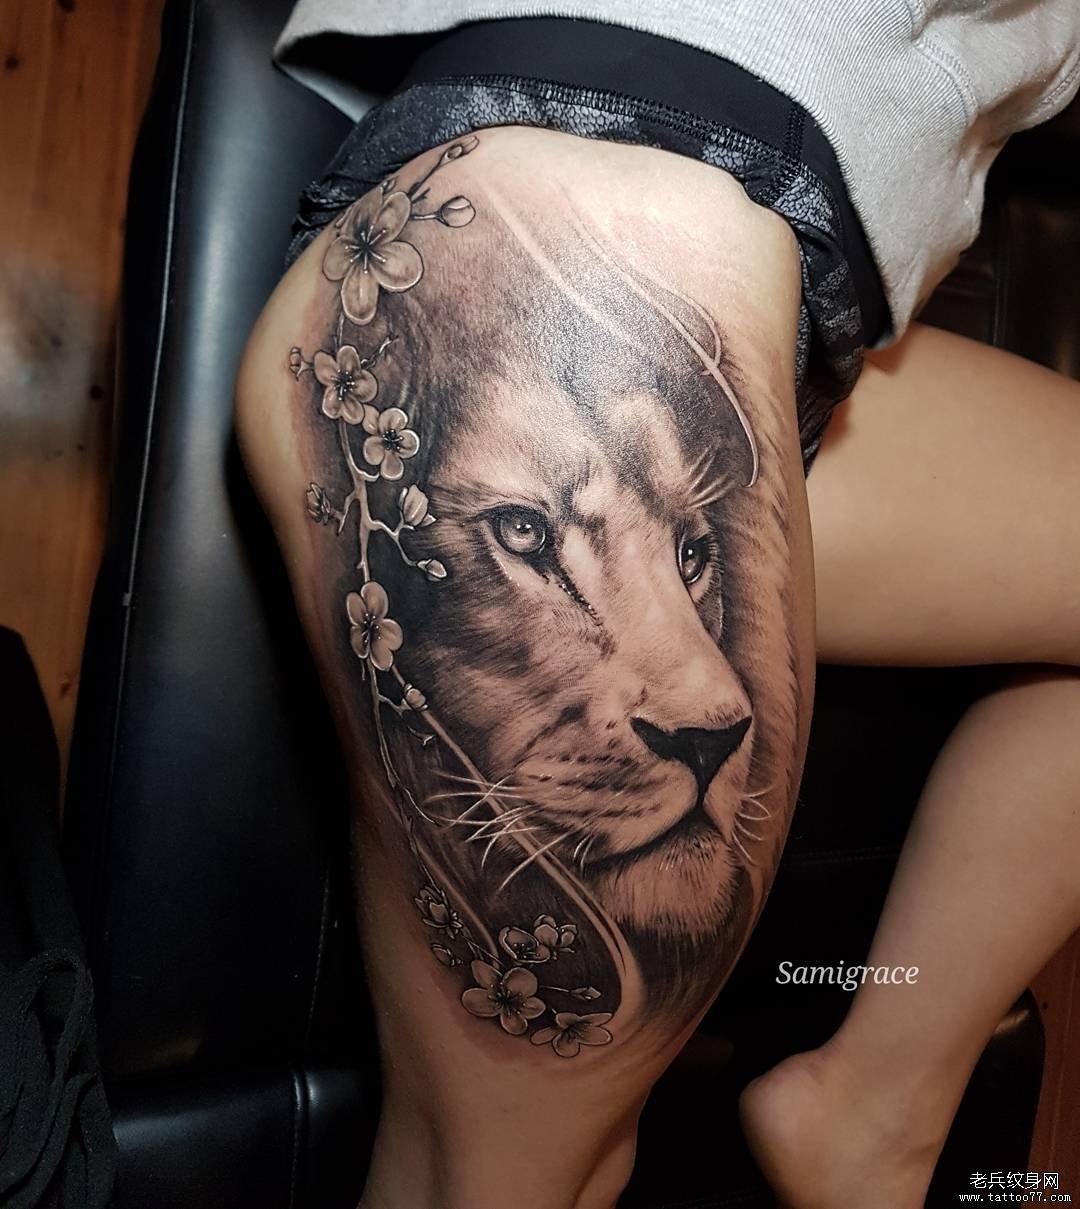 大腿黑灰花藤狮子纹身图案